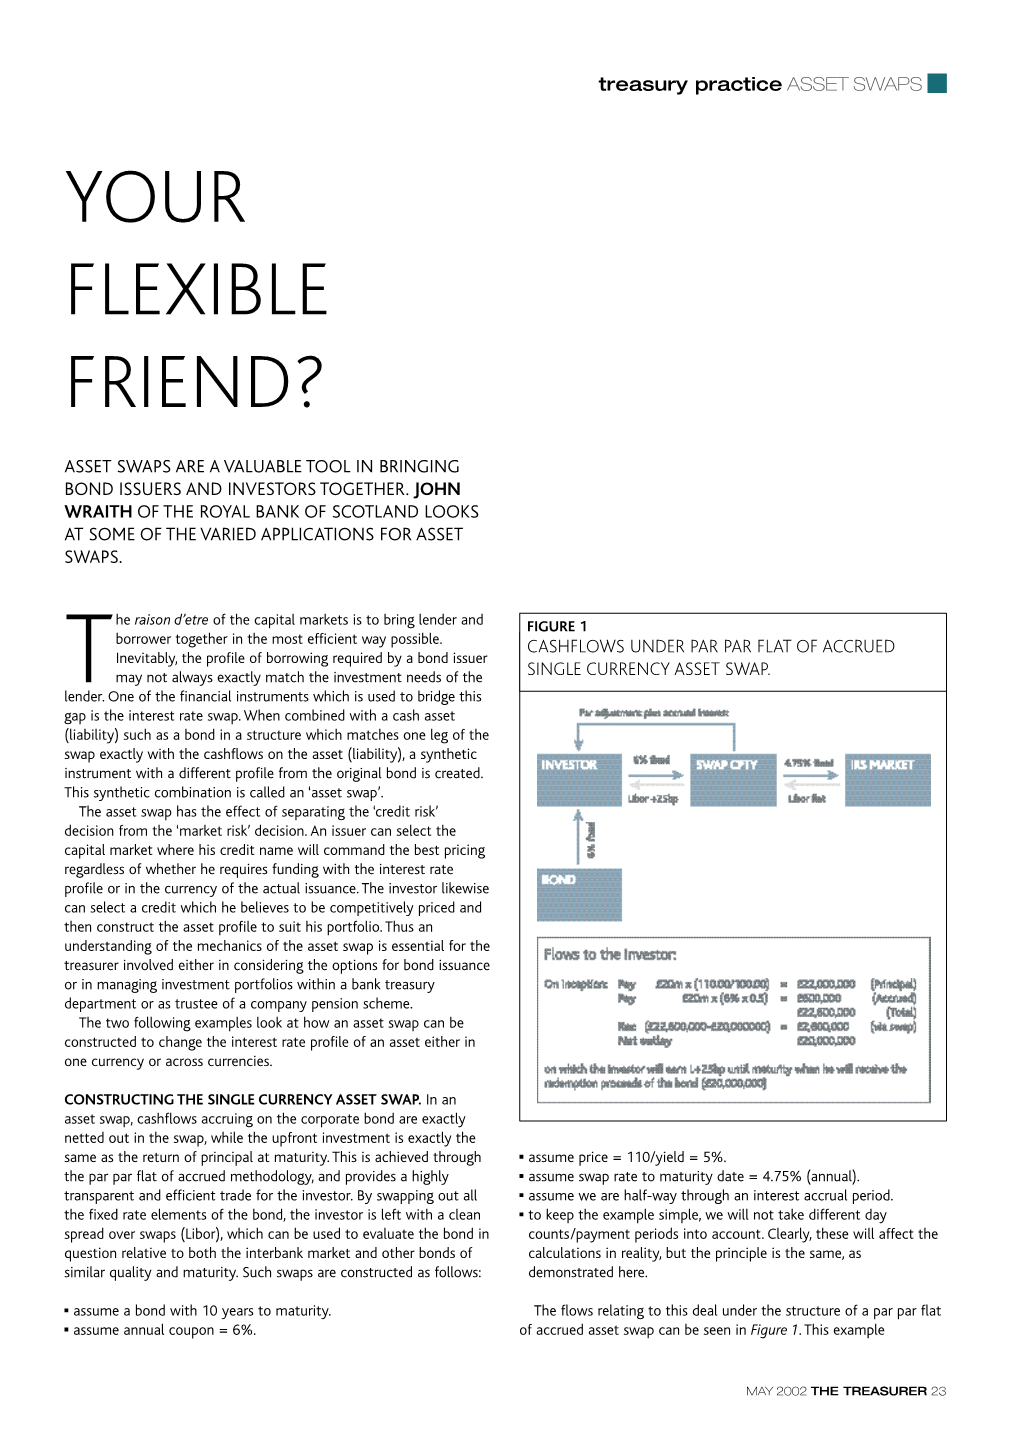 Your Flexible Friend?